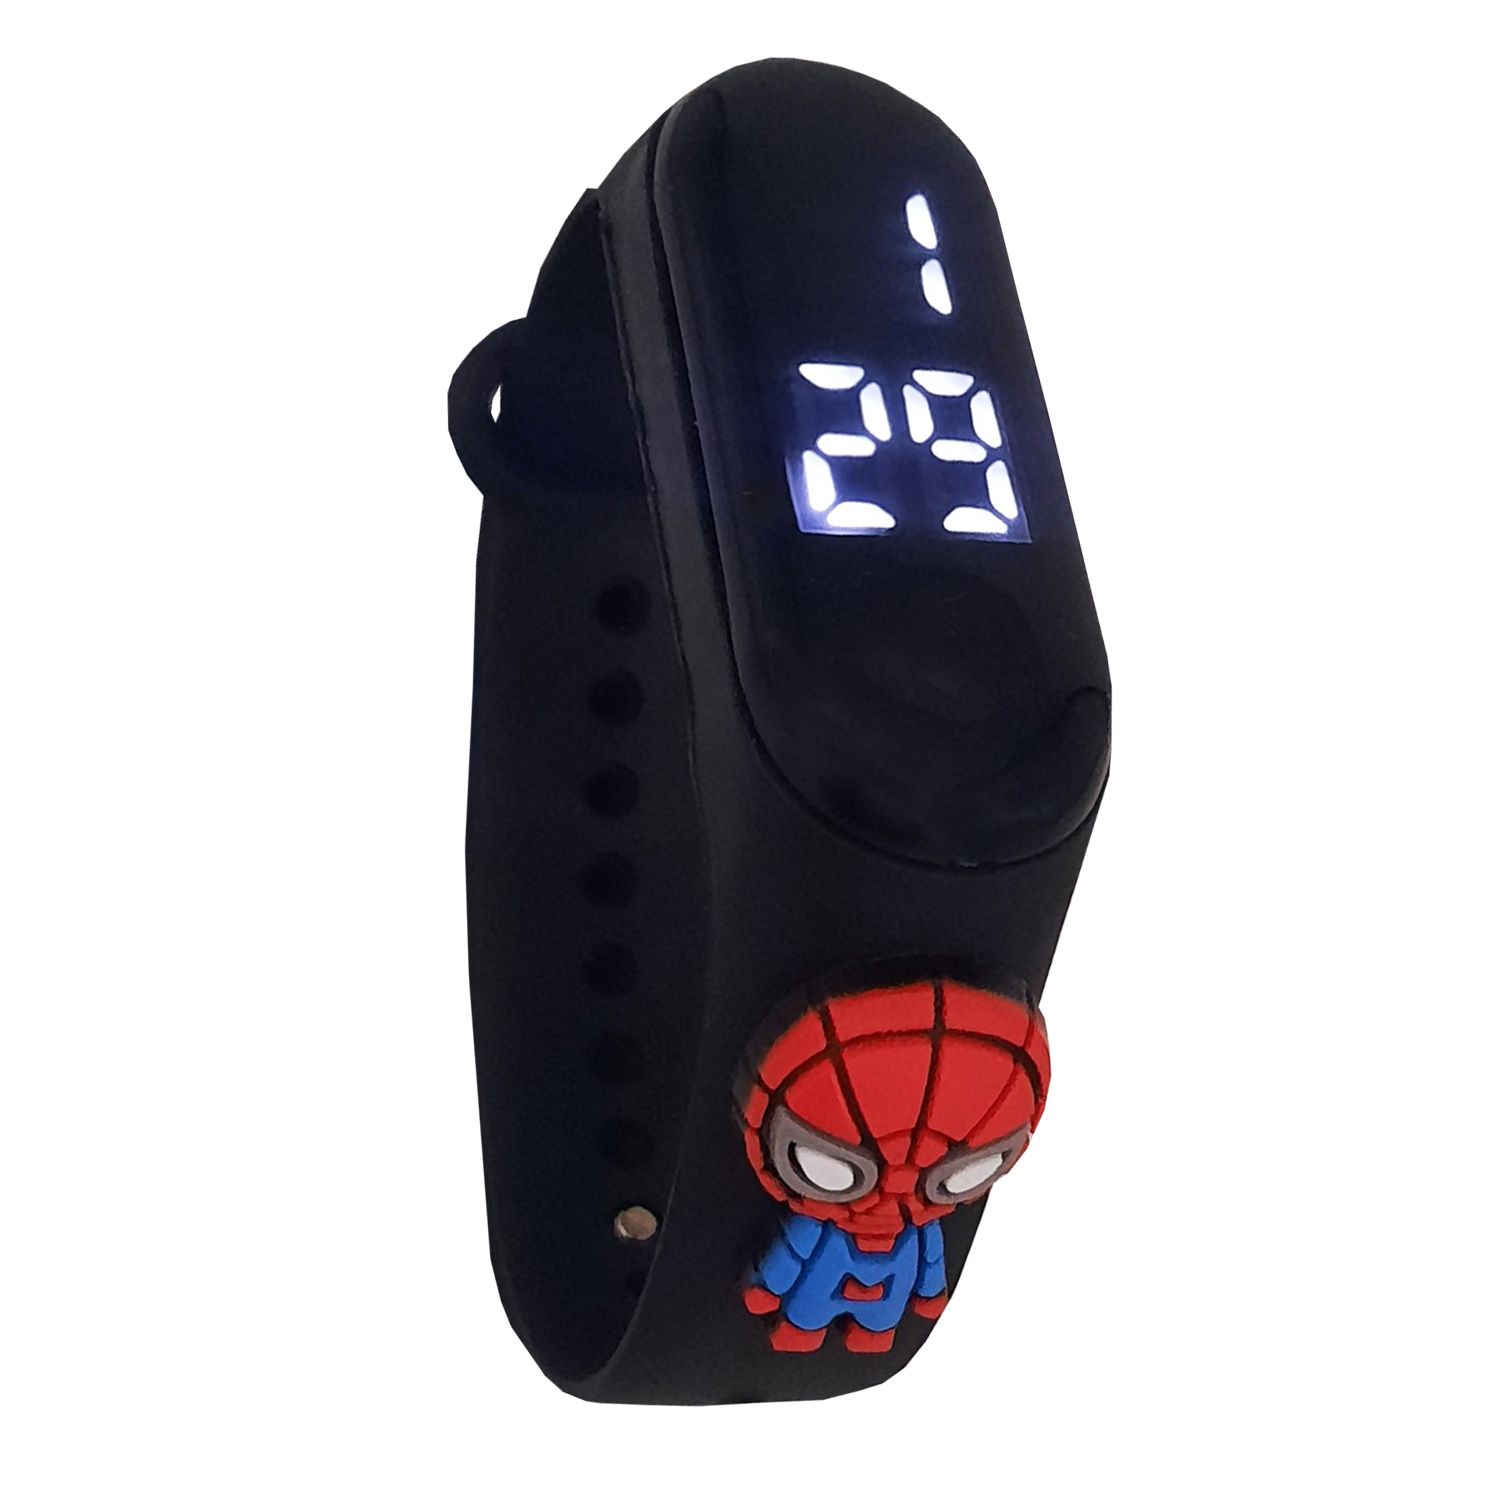 ساعت مچی دیجیتال مدل مرد عنکبوتی کد 05 -  - 1